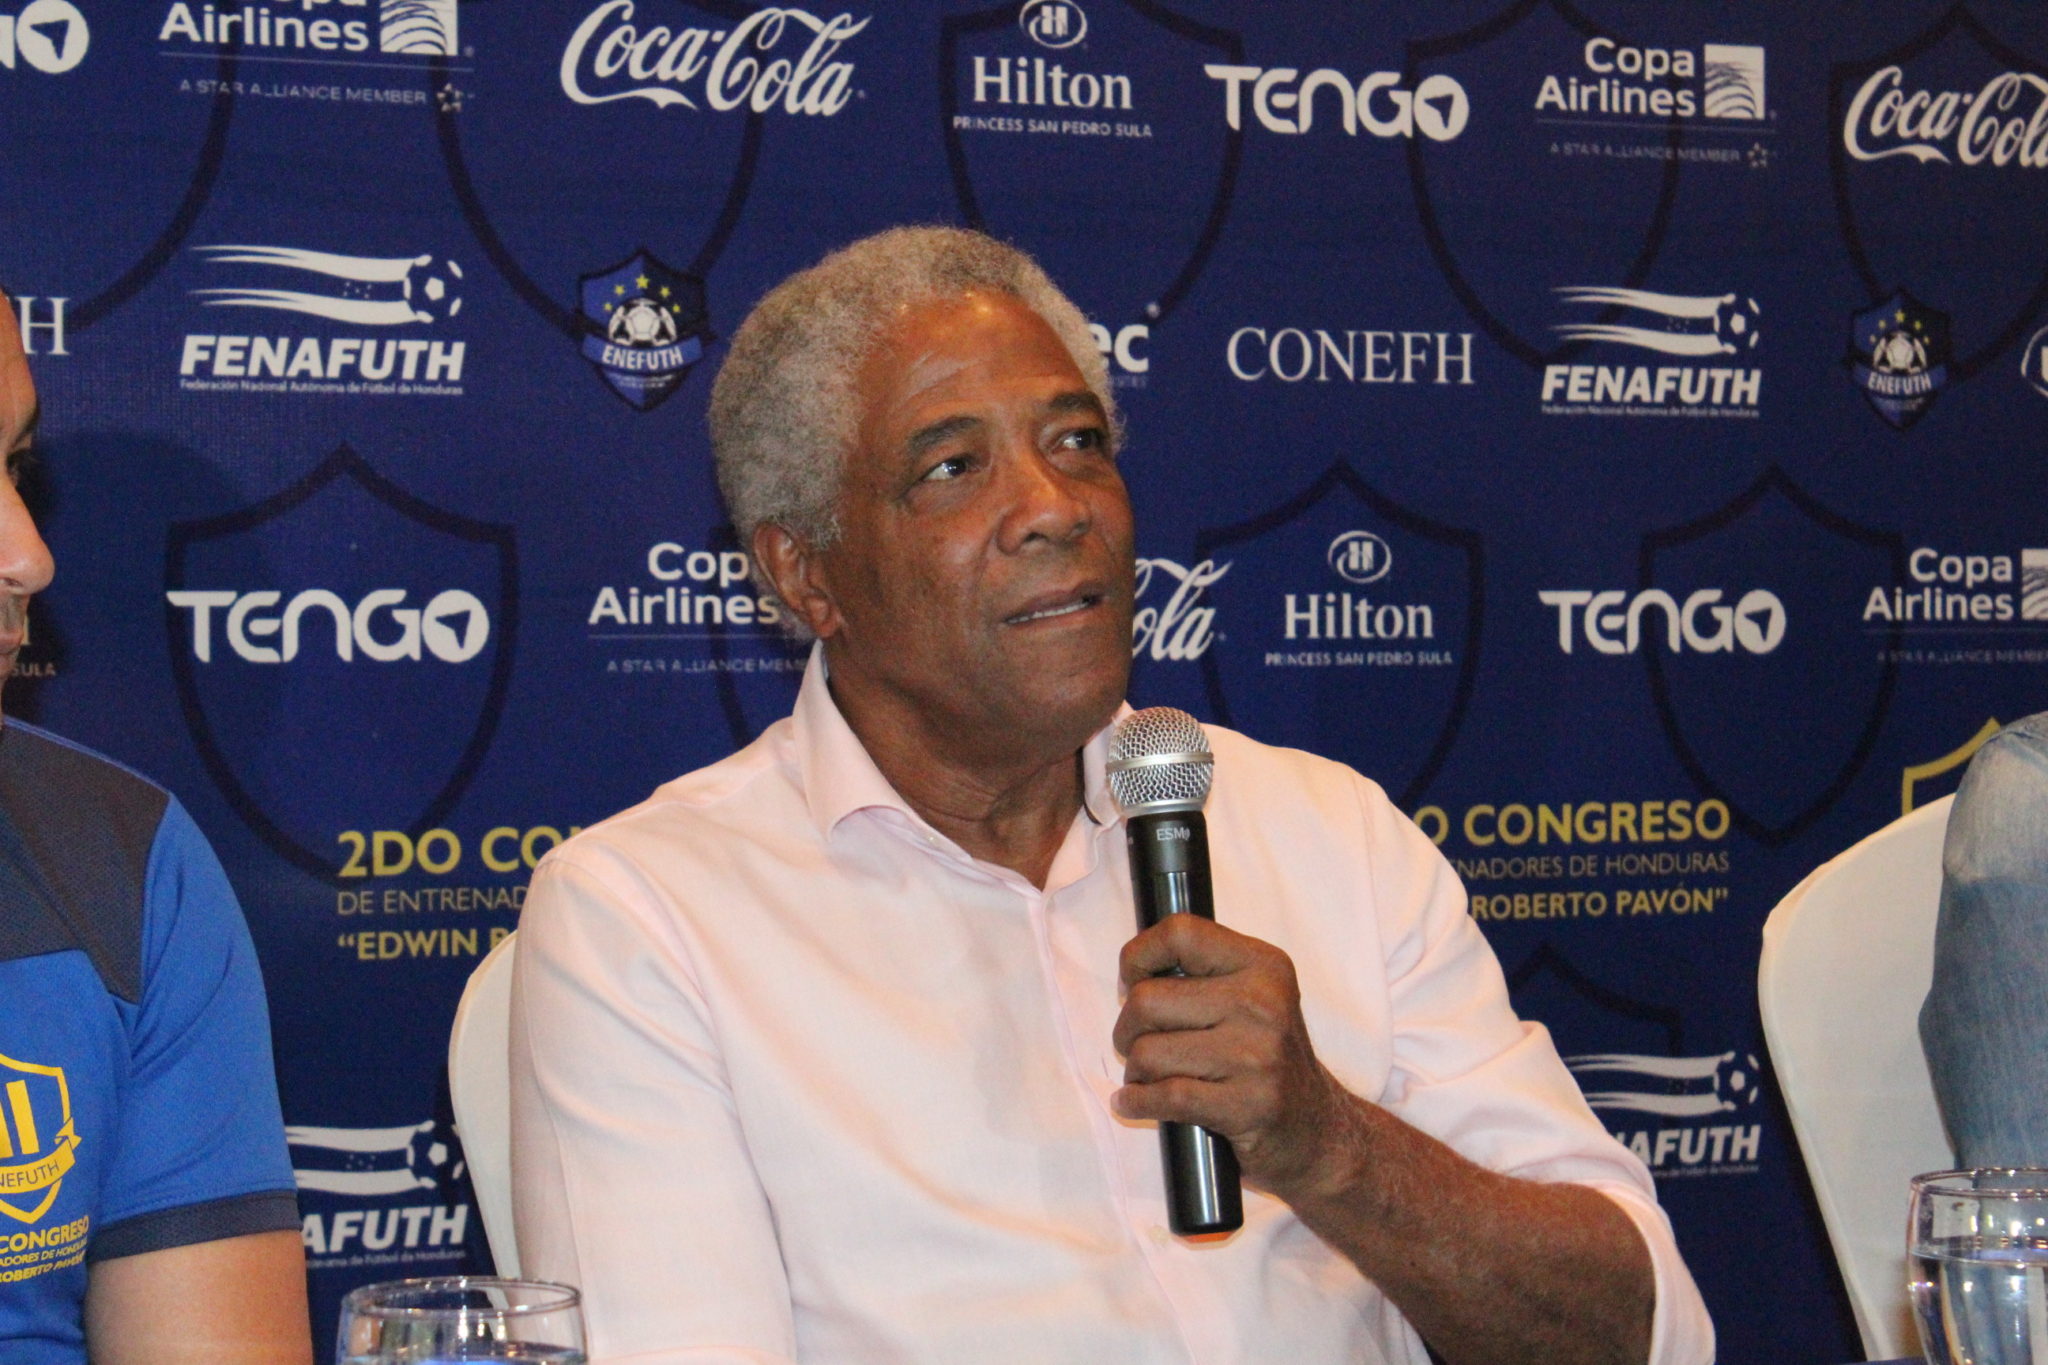 Francisco Maturana ya está en Honduras para Congreso de entrenadores